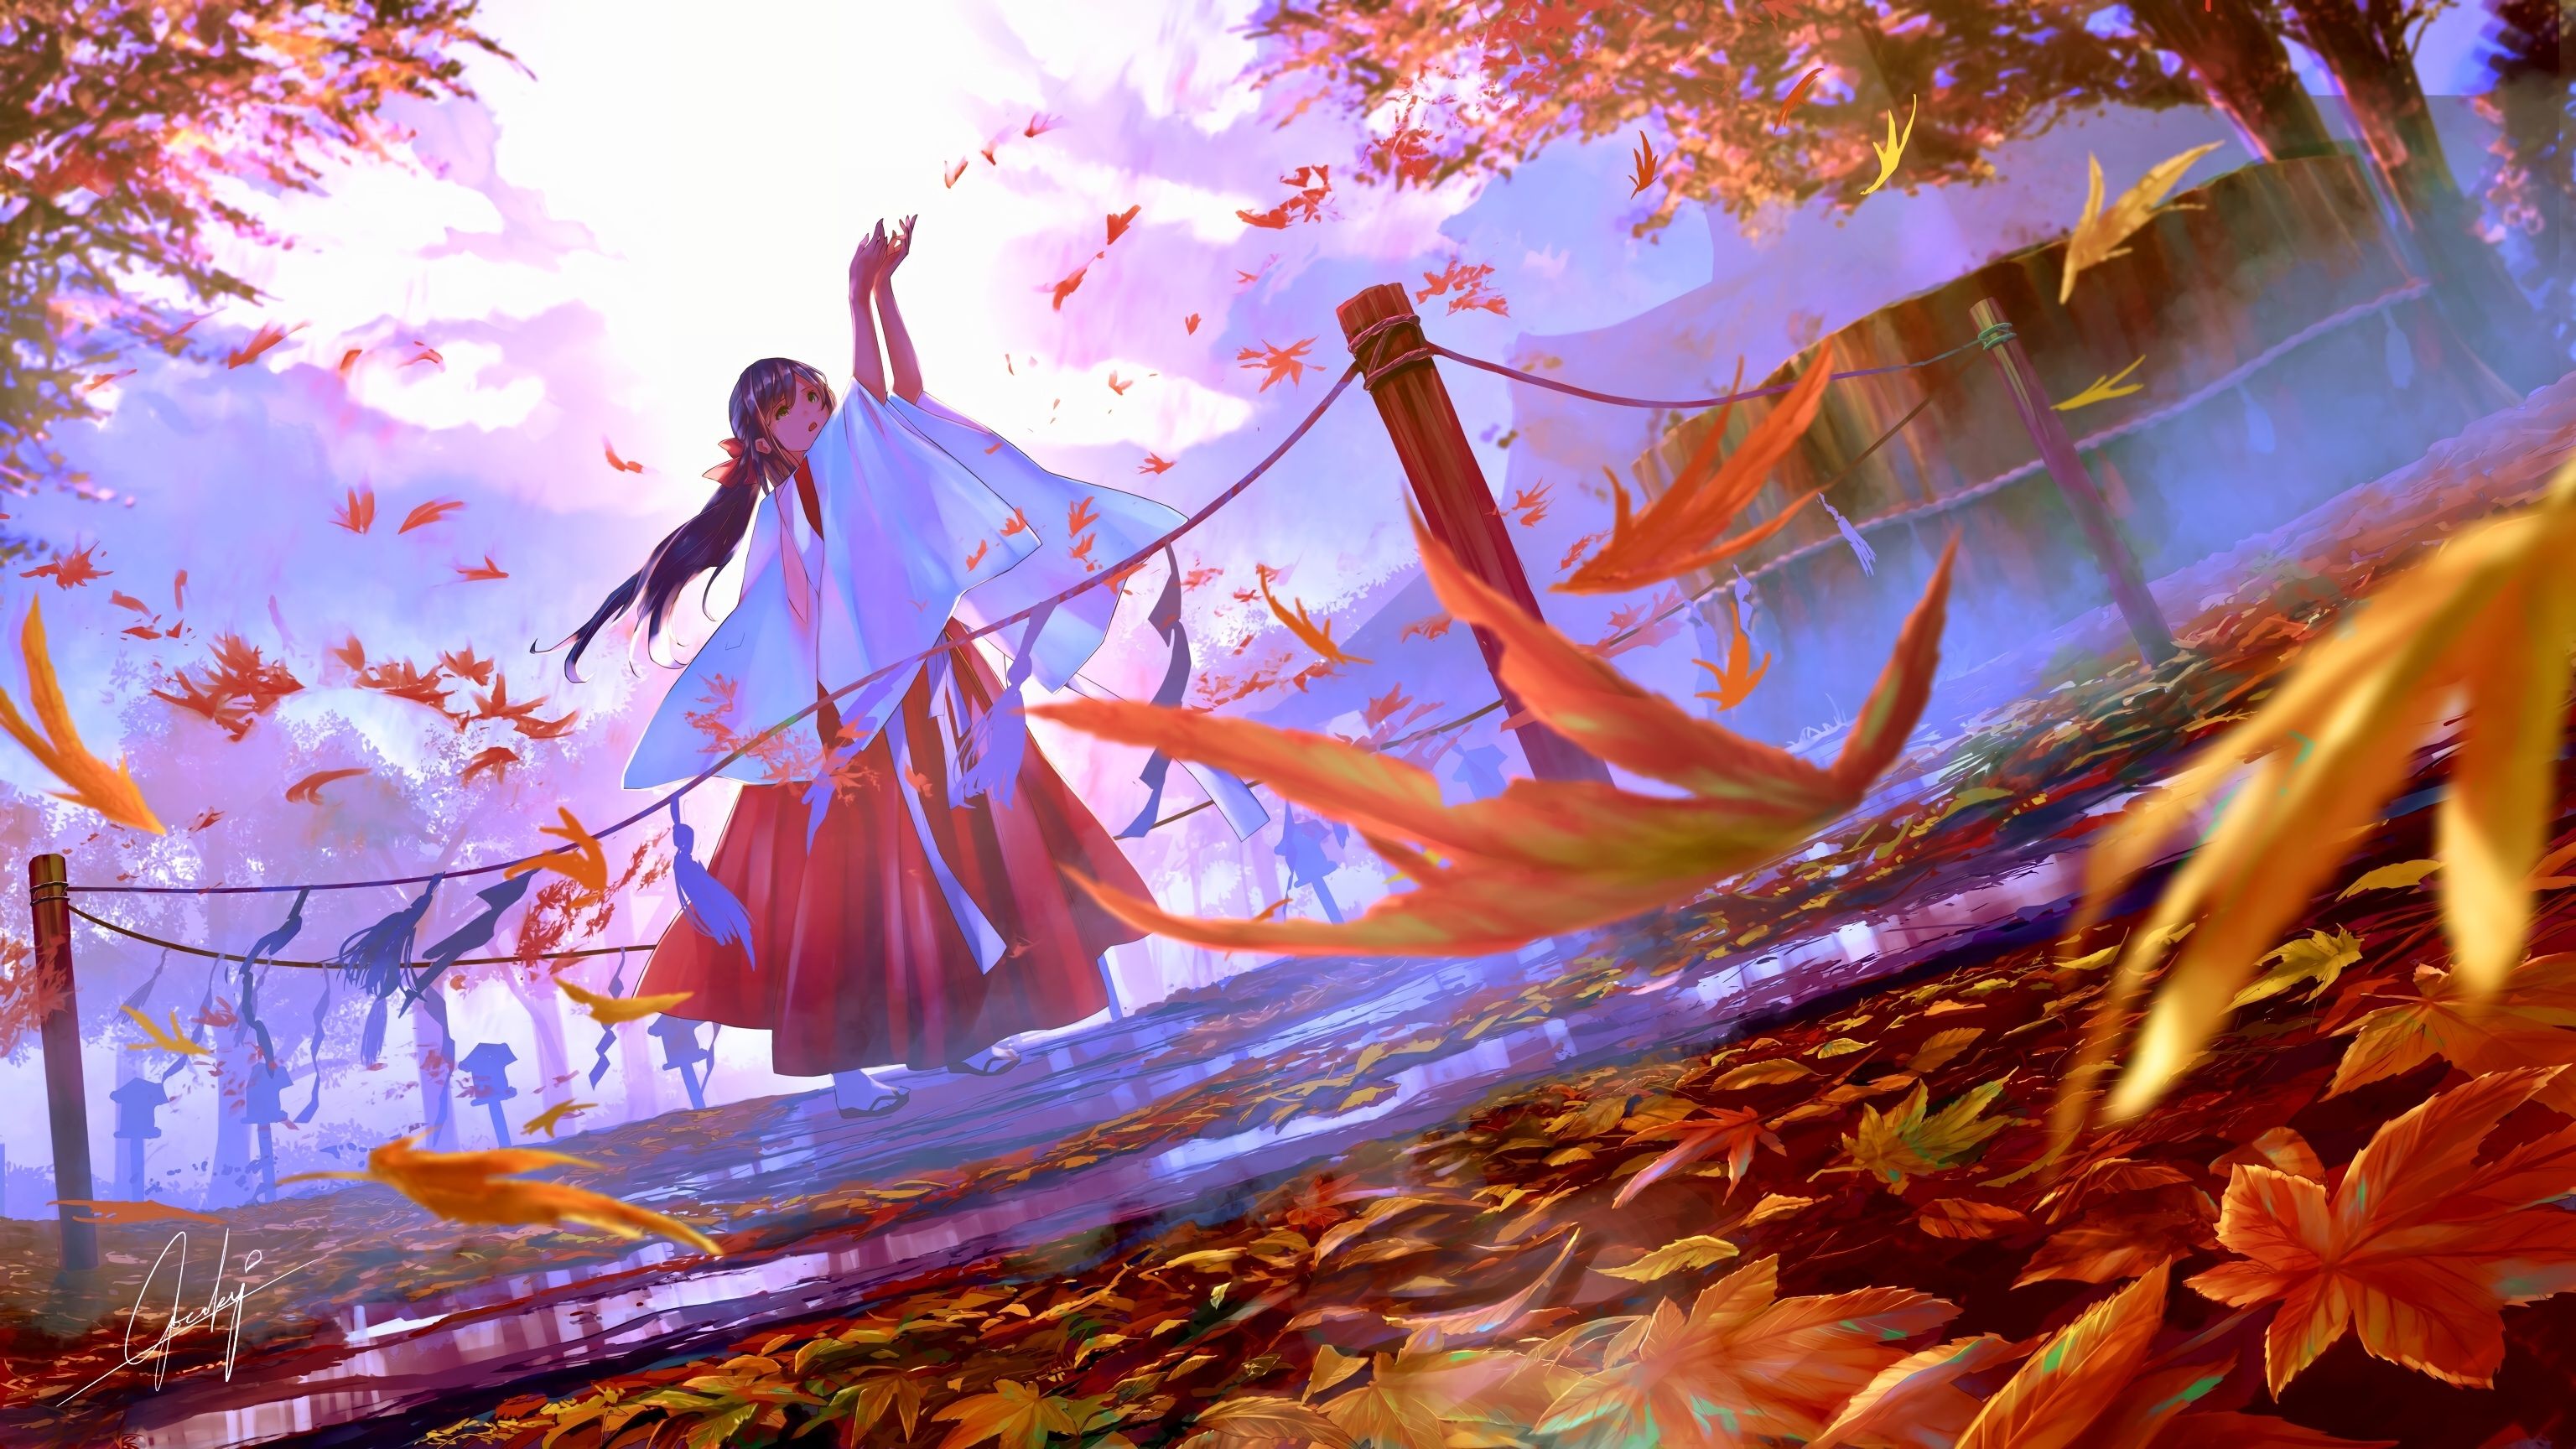 Anime Miko Girl, Autumn, Leaves, Shrine, Anime Landscape. Anime scenery, Anime scenery wallpaper, Anime wallpaper